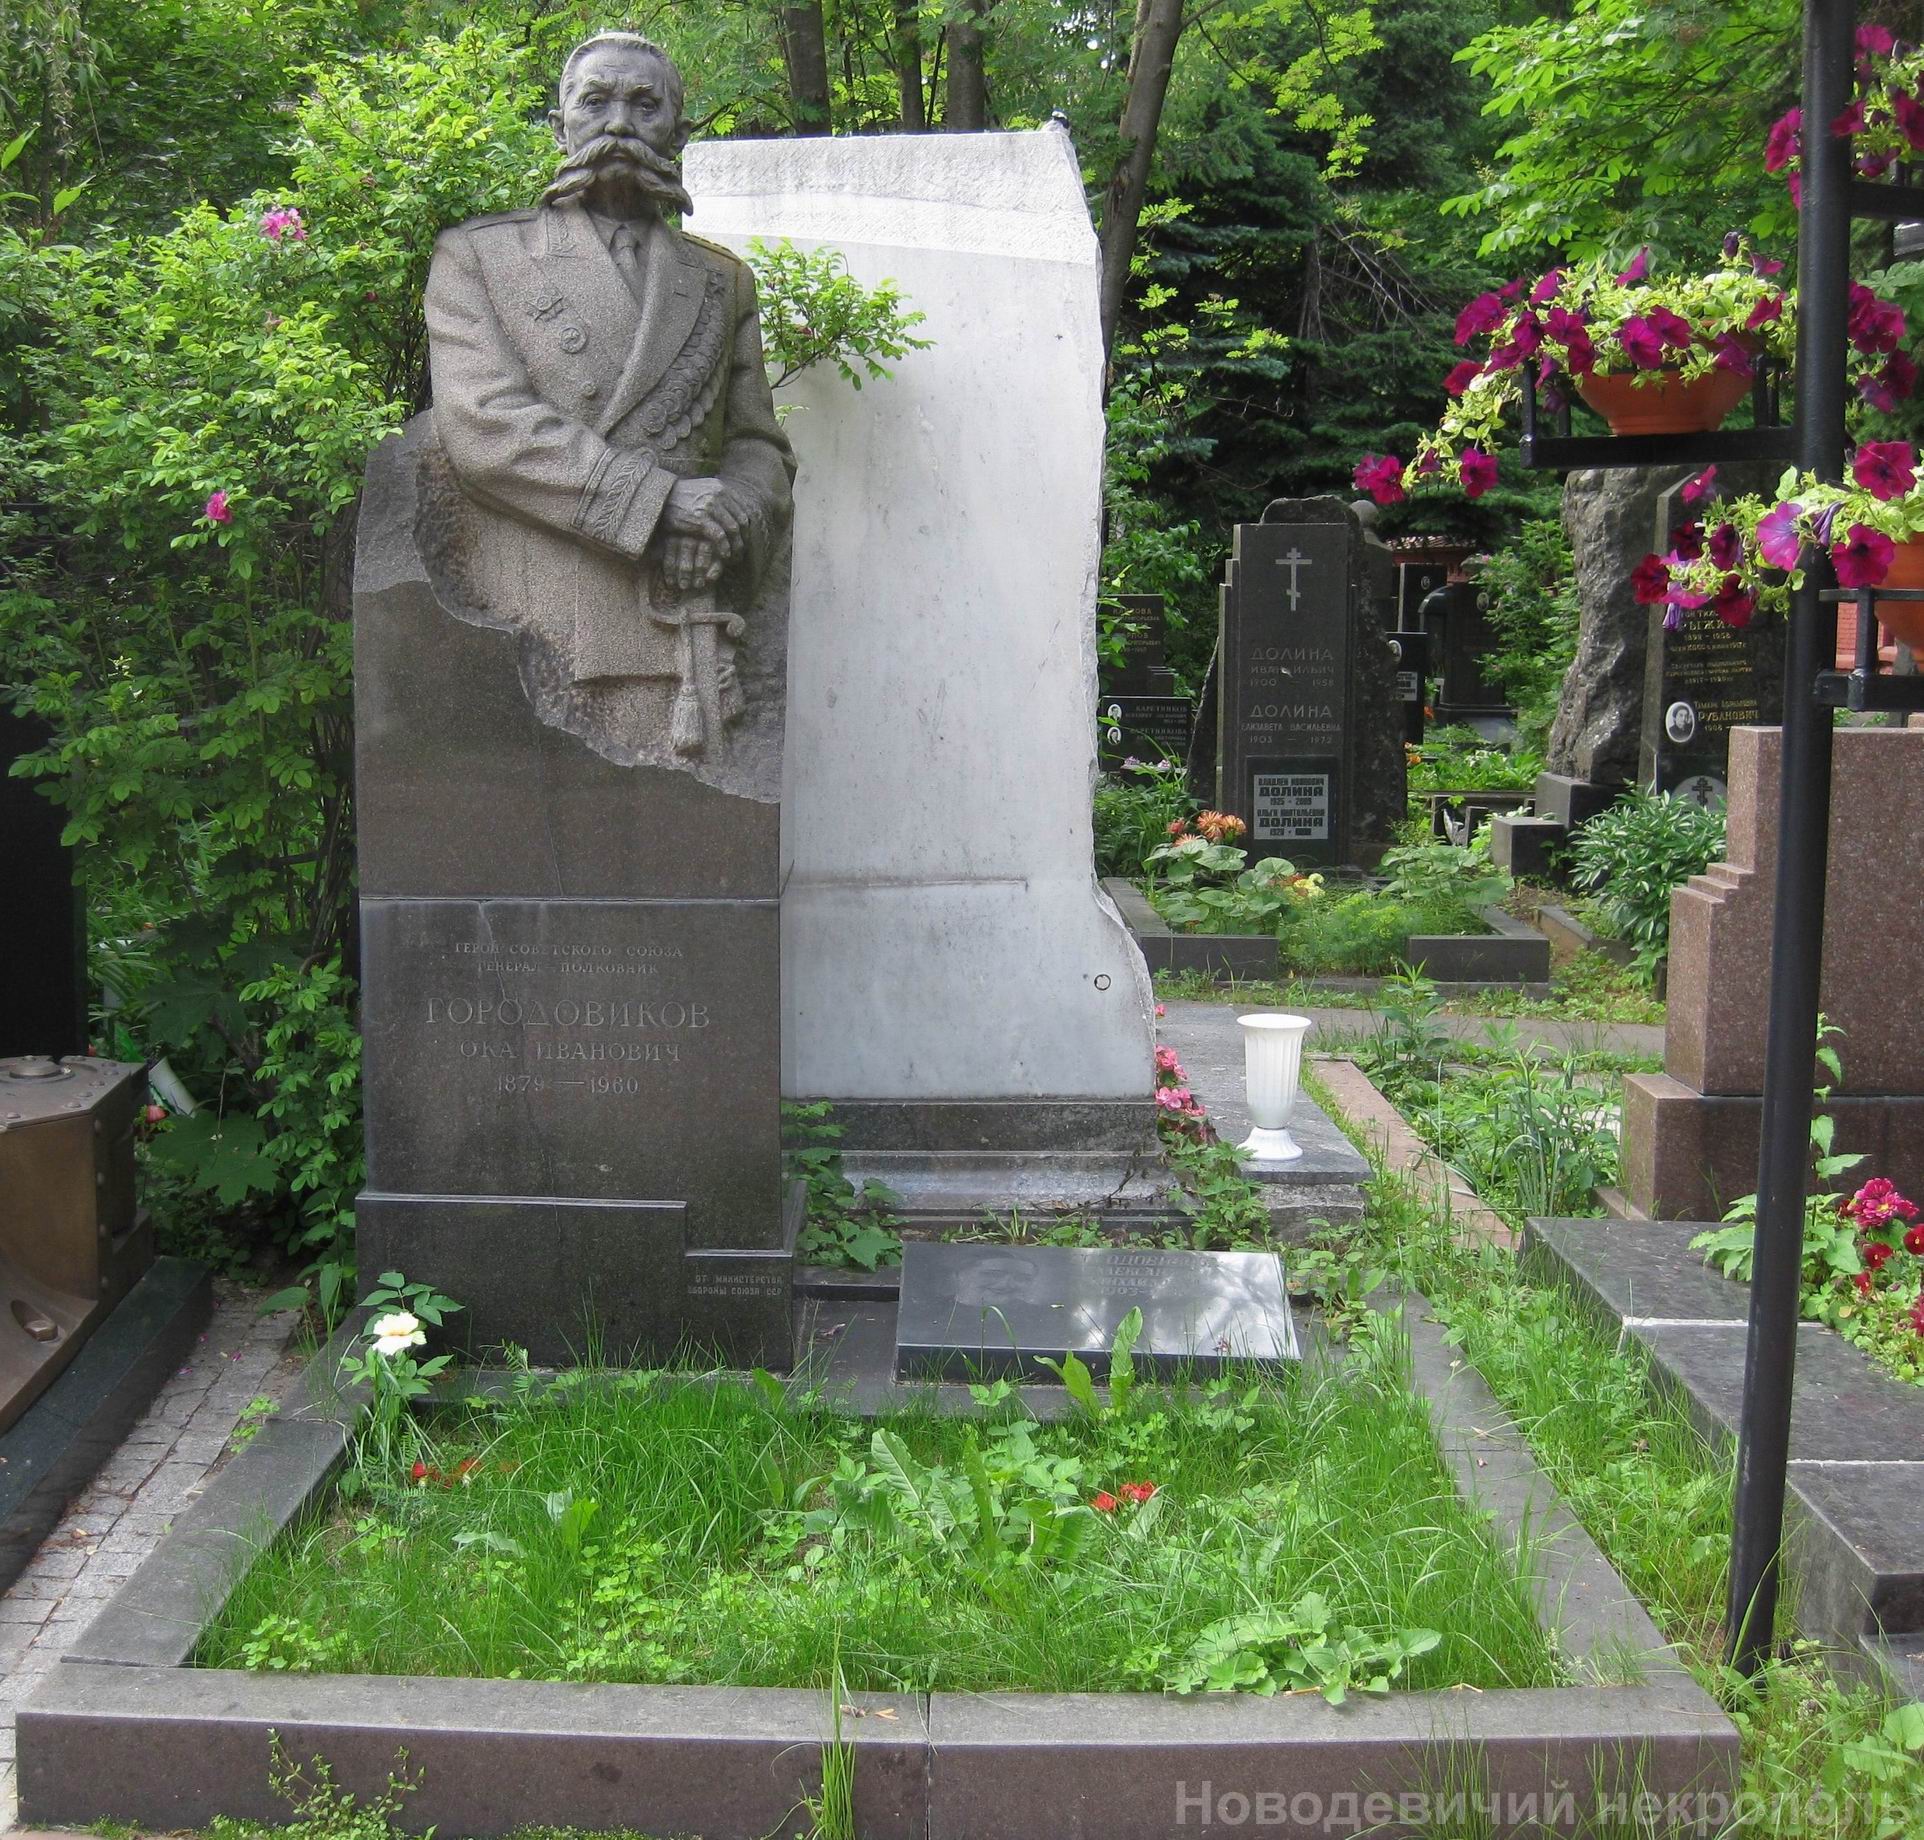 Памятник на могиле Городовикова О.И. (1879-1960), ск. А.Елецкий, арх. В.Васнецов, на Новодевичьем кладбище (5-24-4).